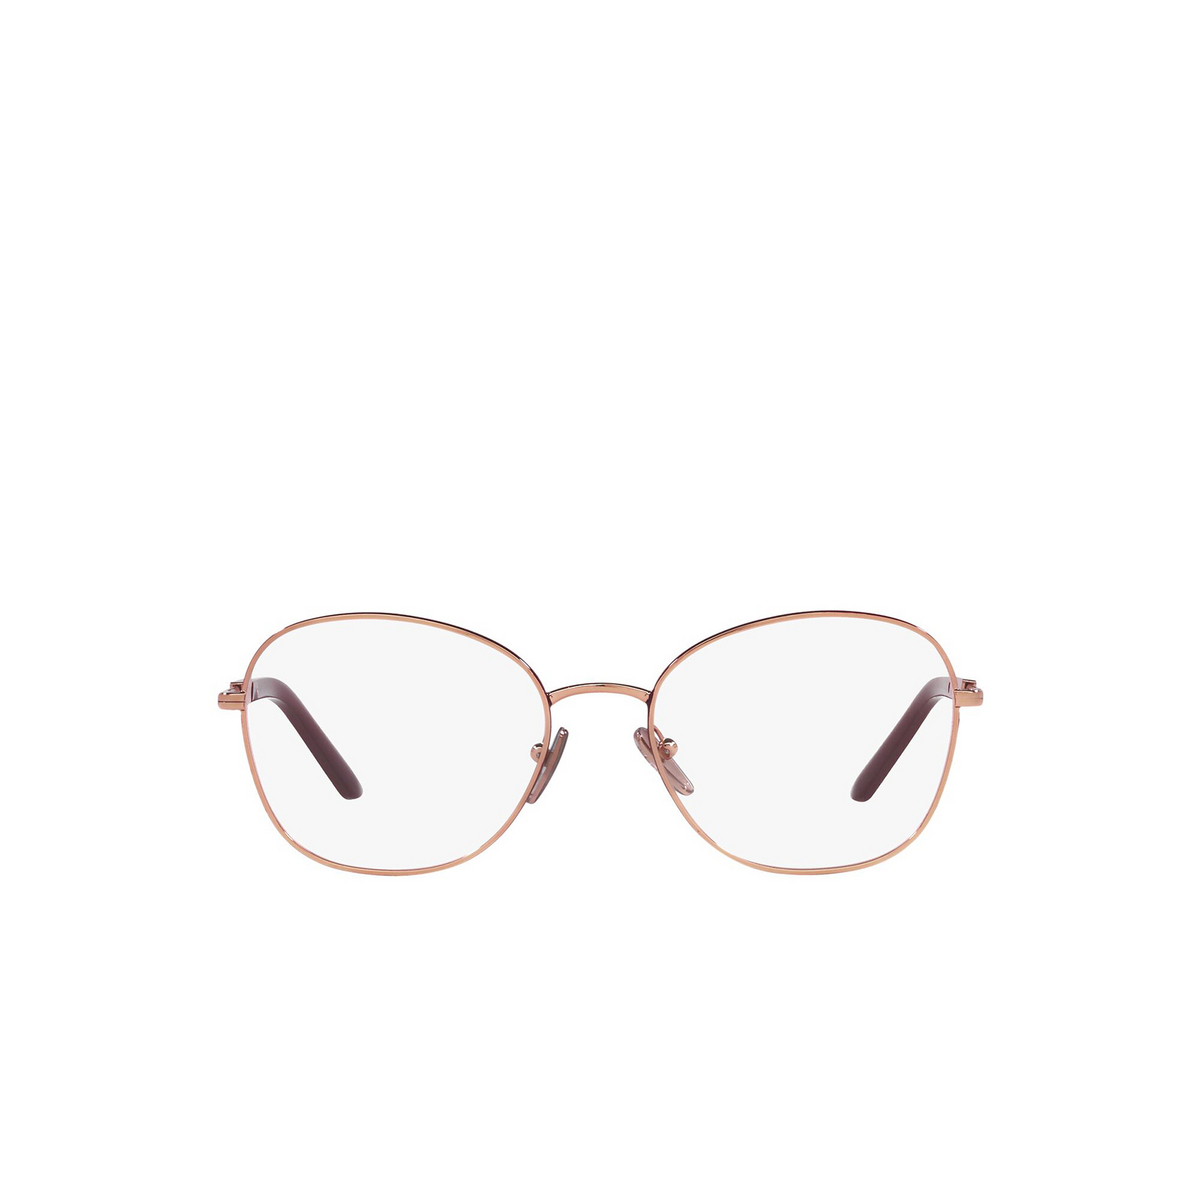 Prada® Round Eyeglasses: PR 64YV color Rose Gold / Rosso 16A1O1 - front view.